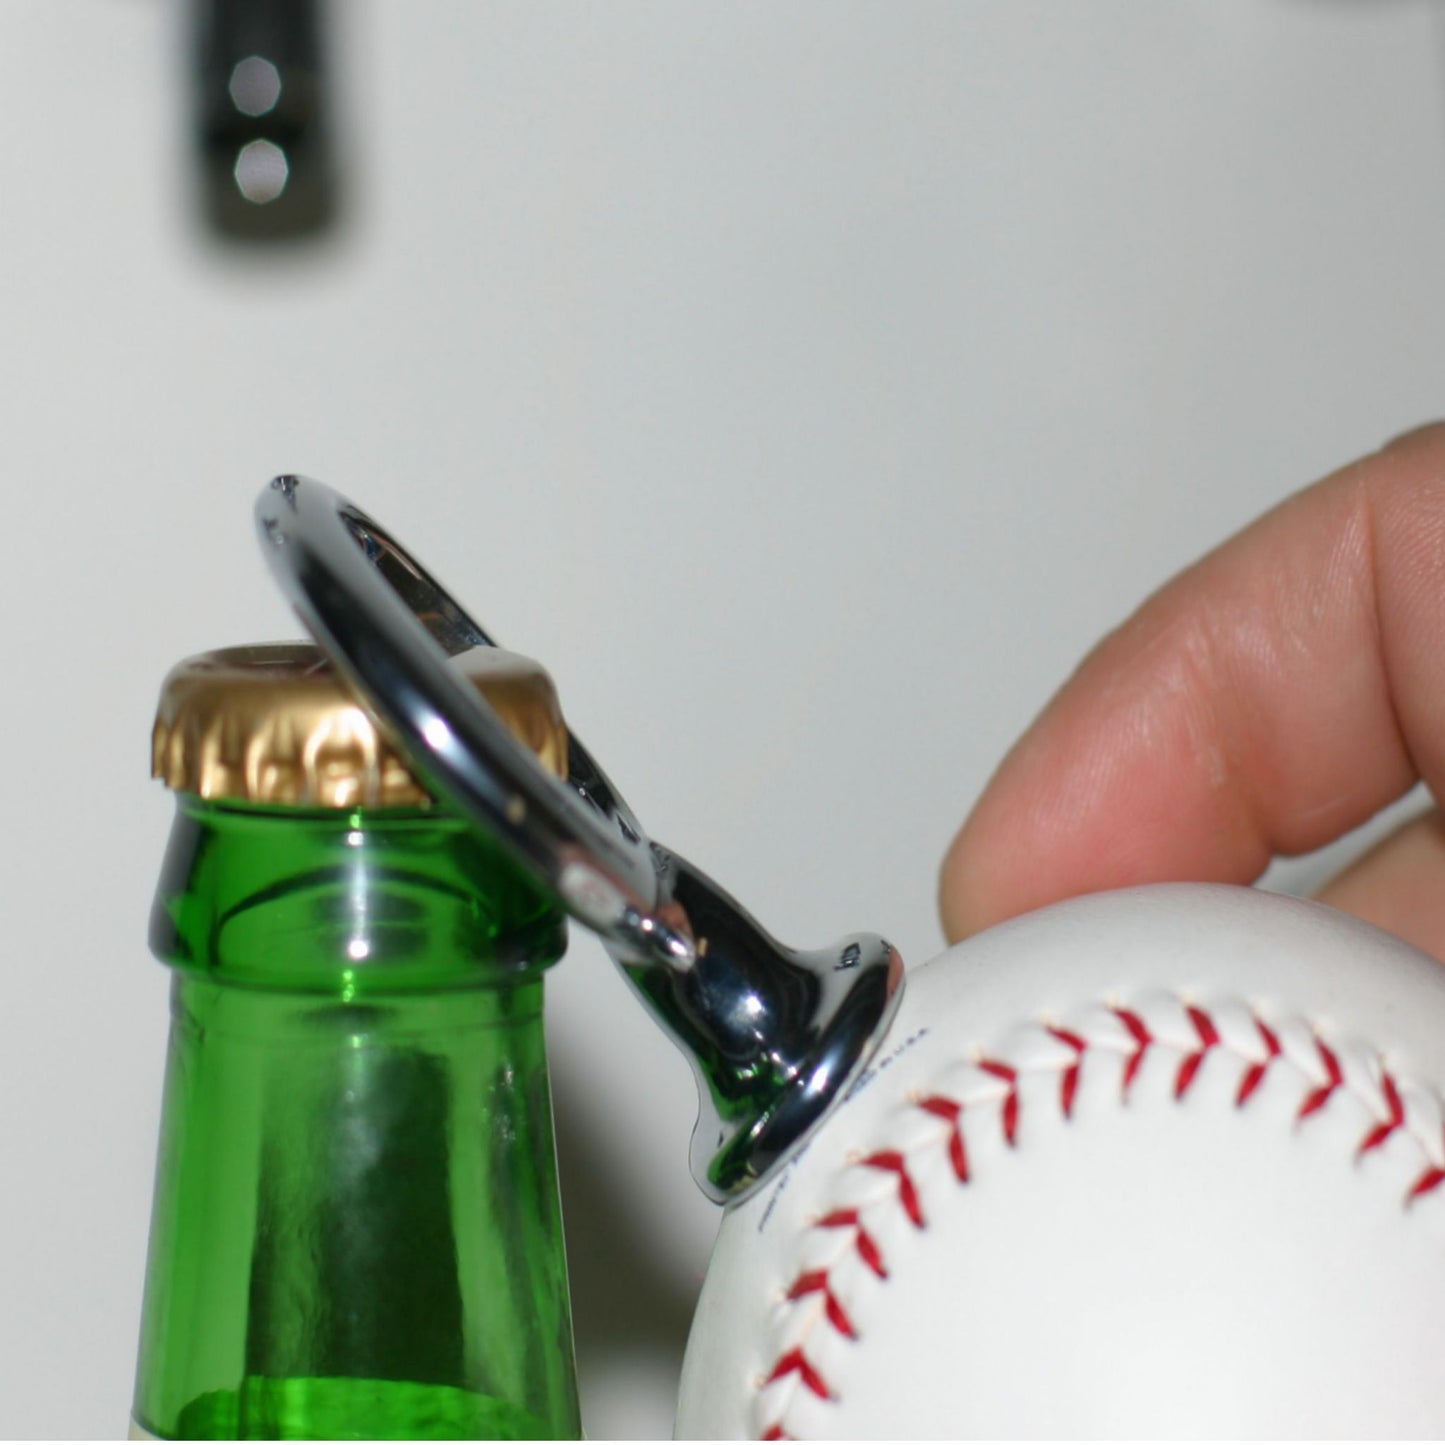 Atlanta Braves Licensed Baseball Fulcrum Series Bottle Opener